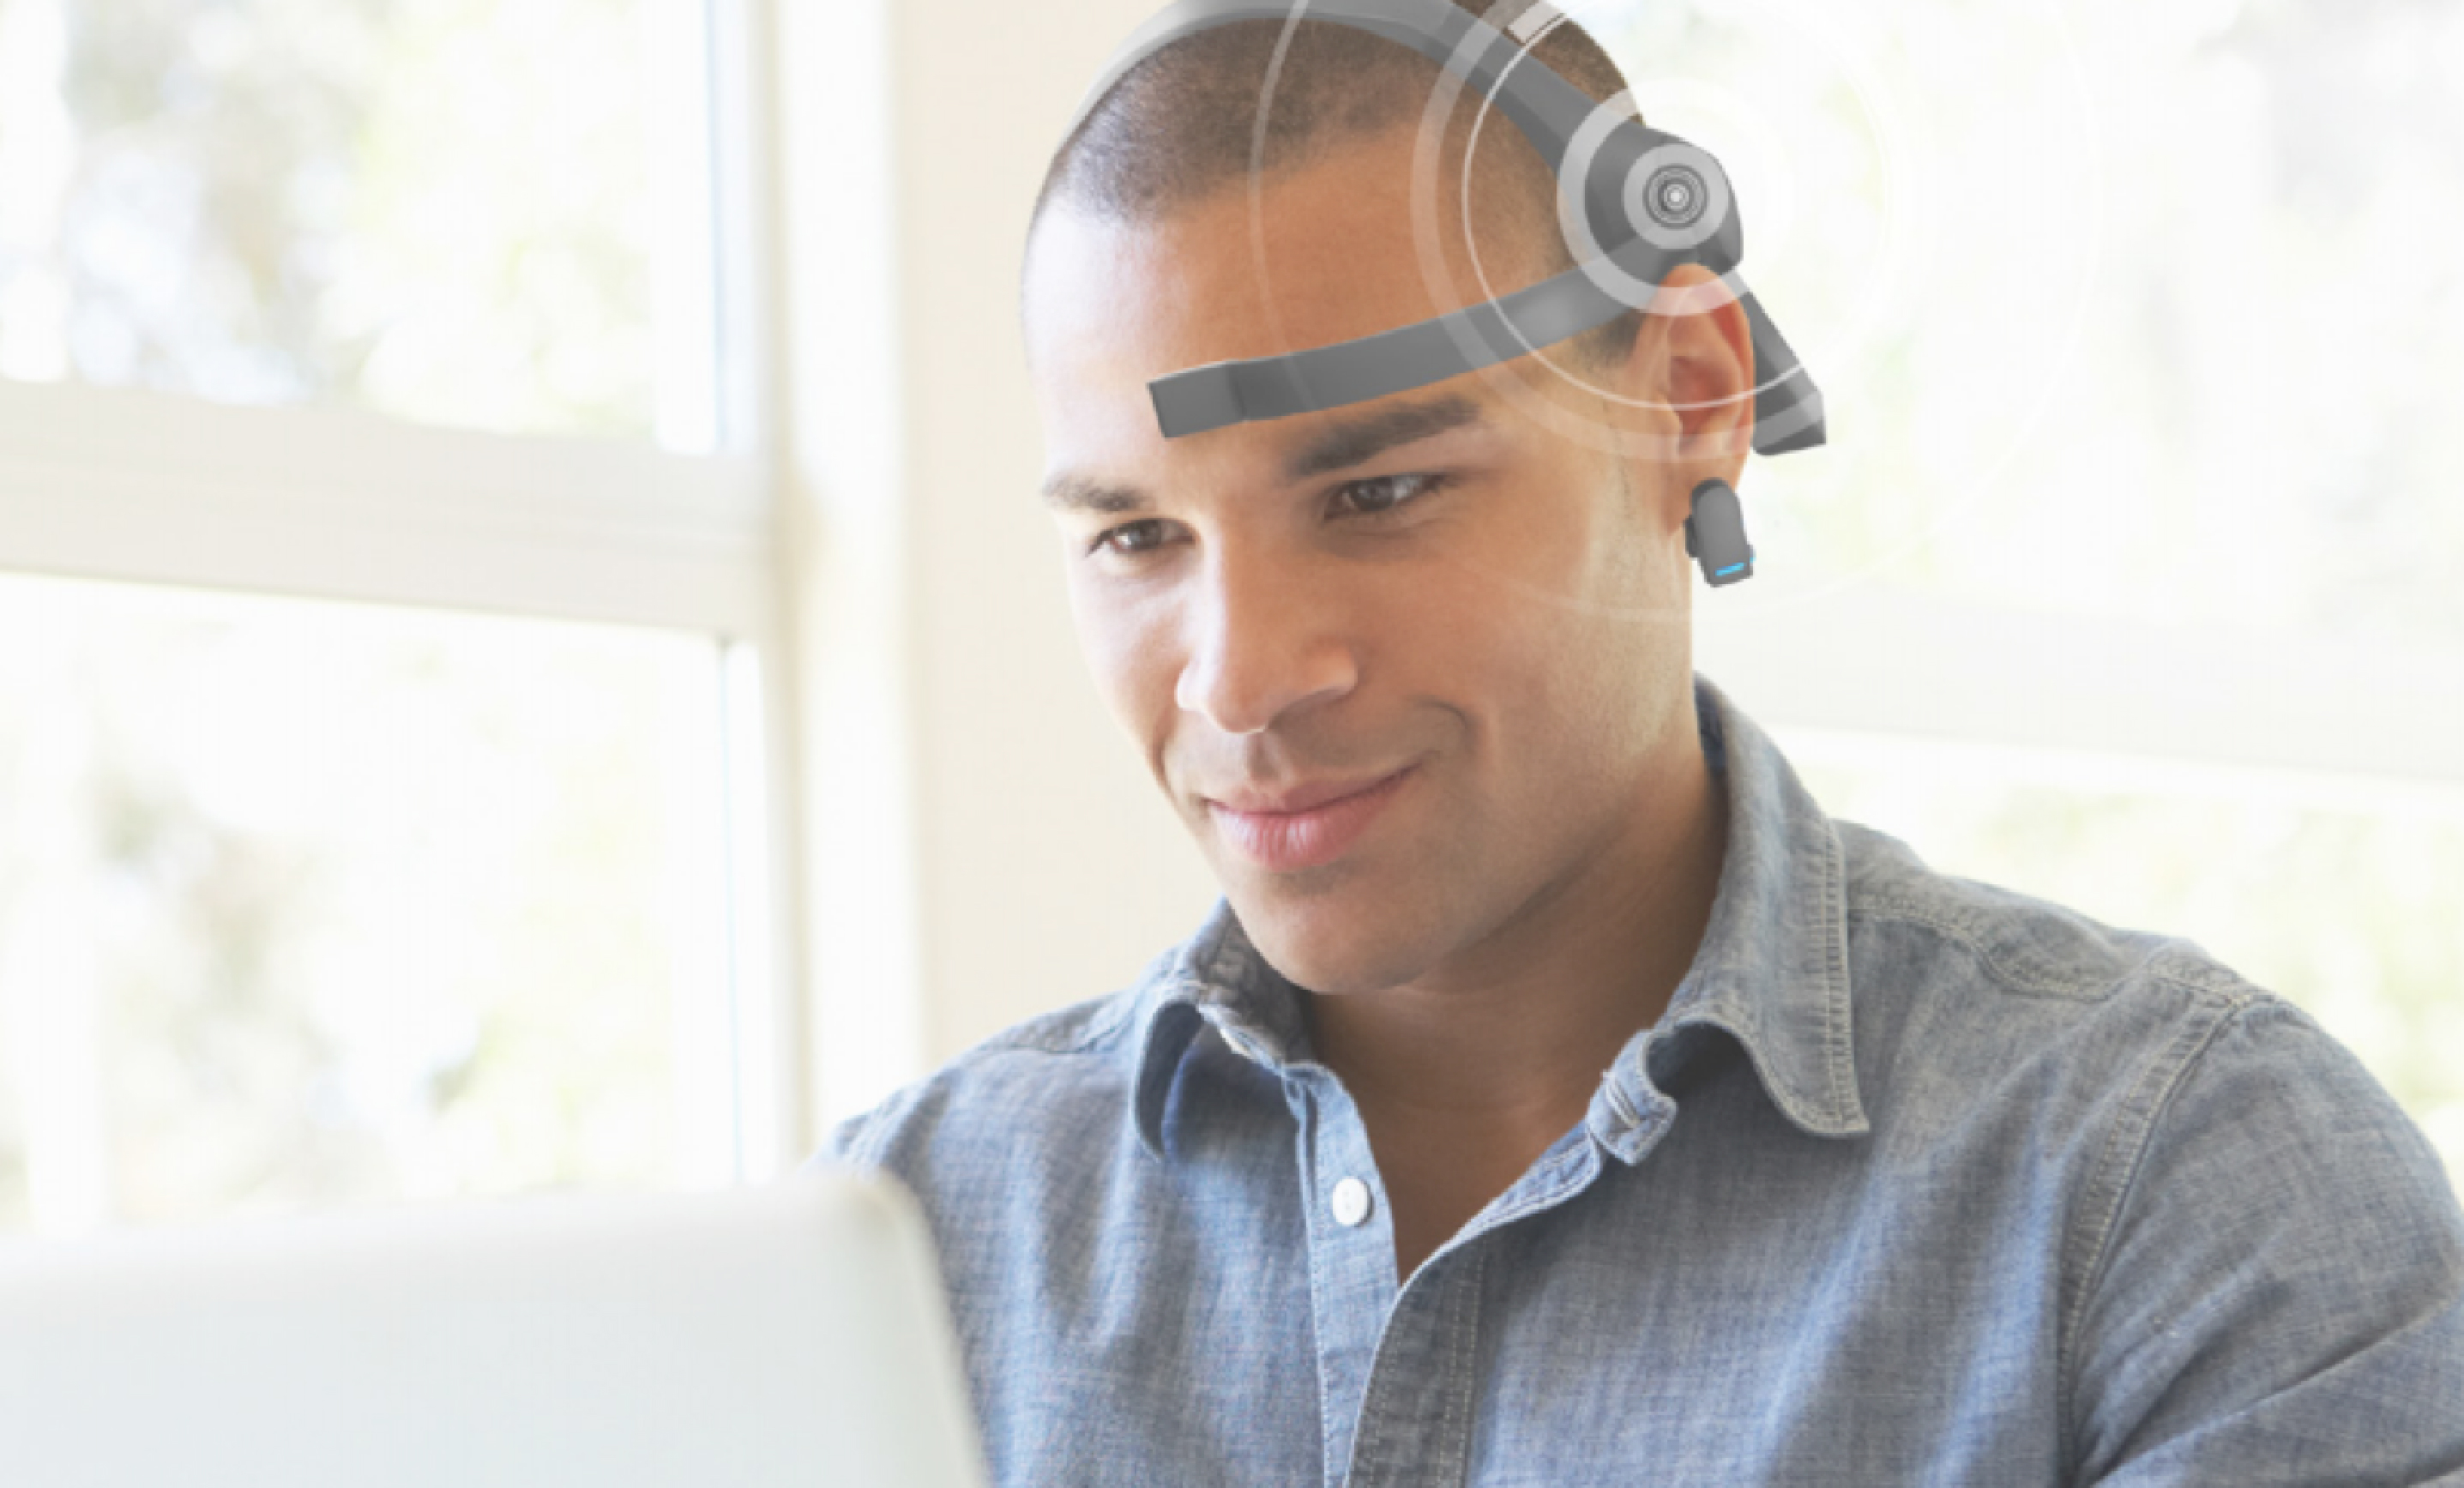 Man wearing EEG Headset